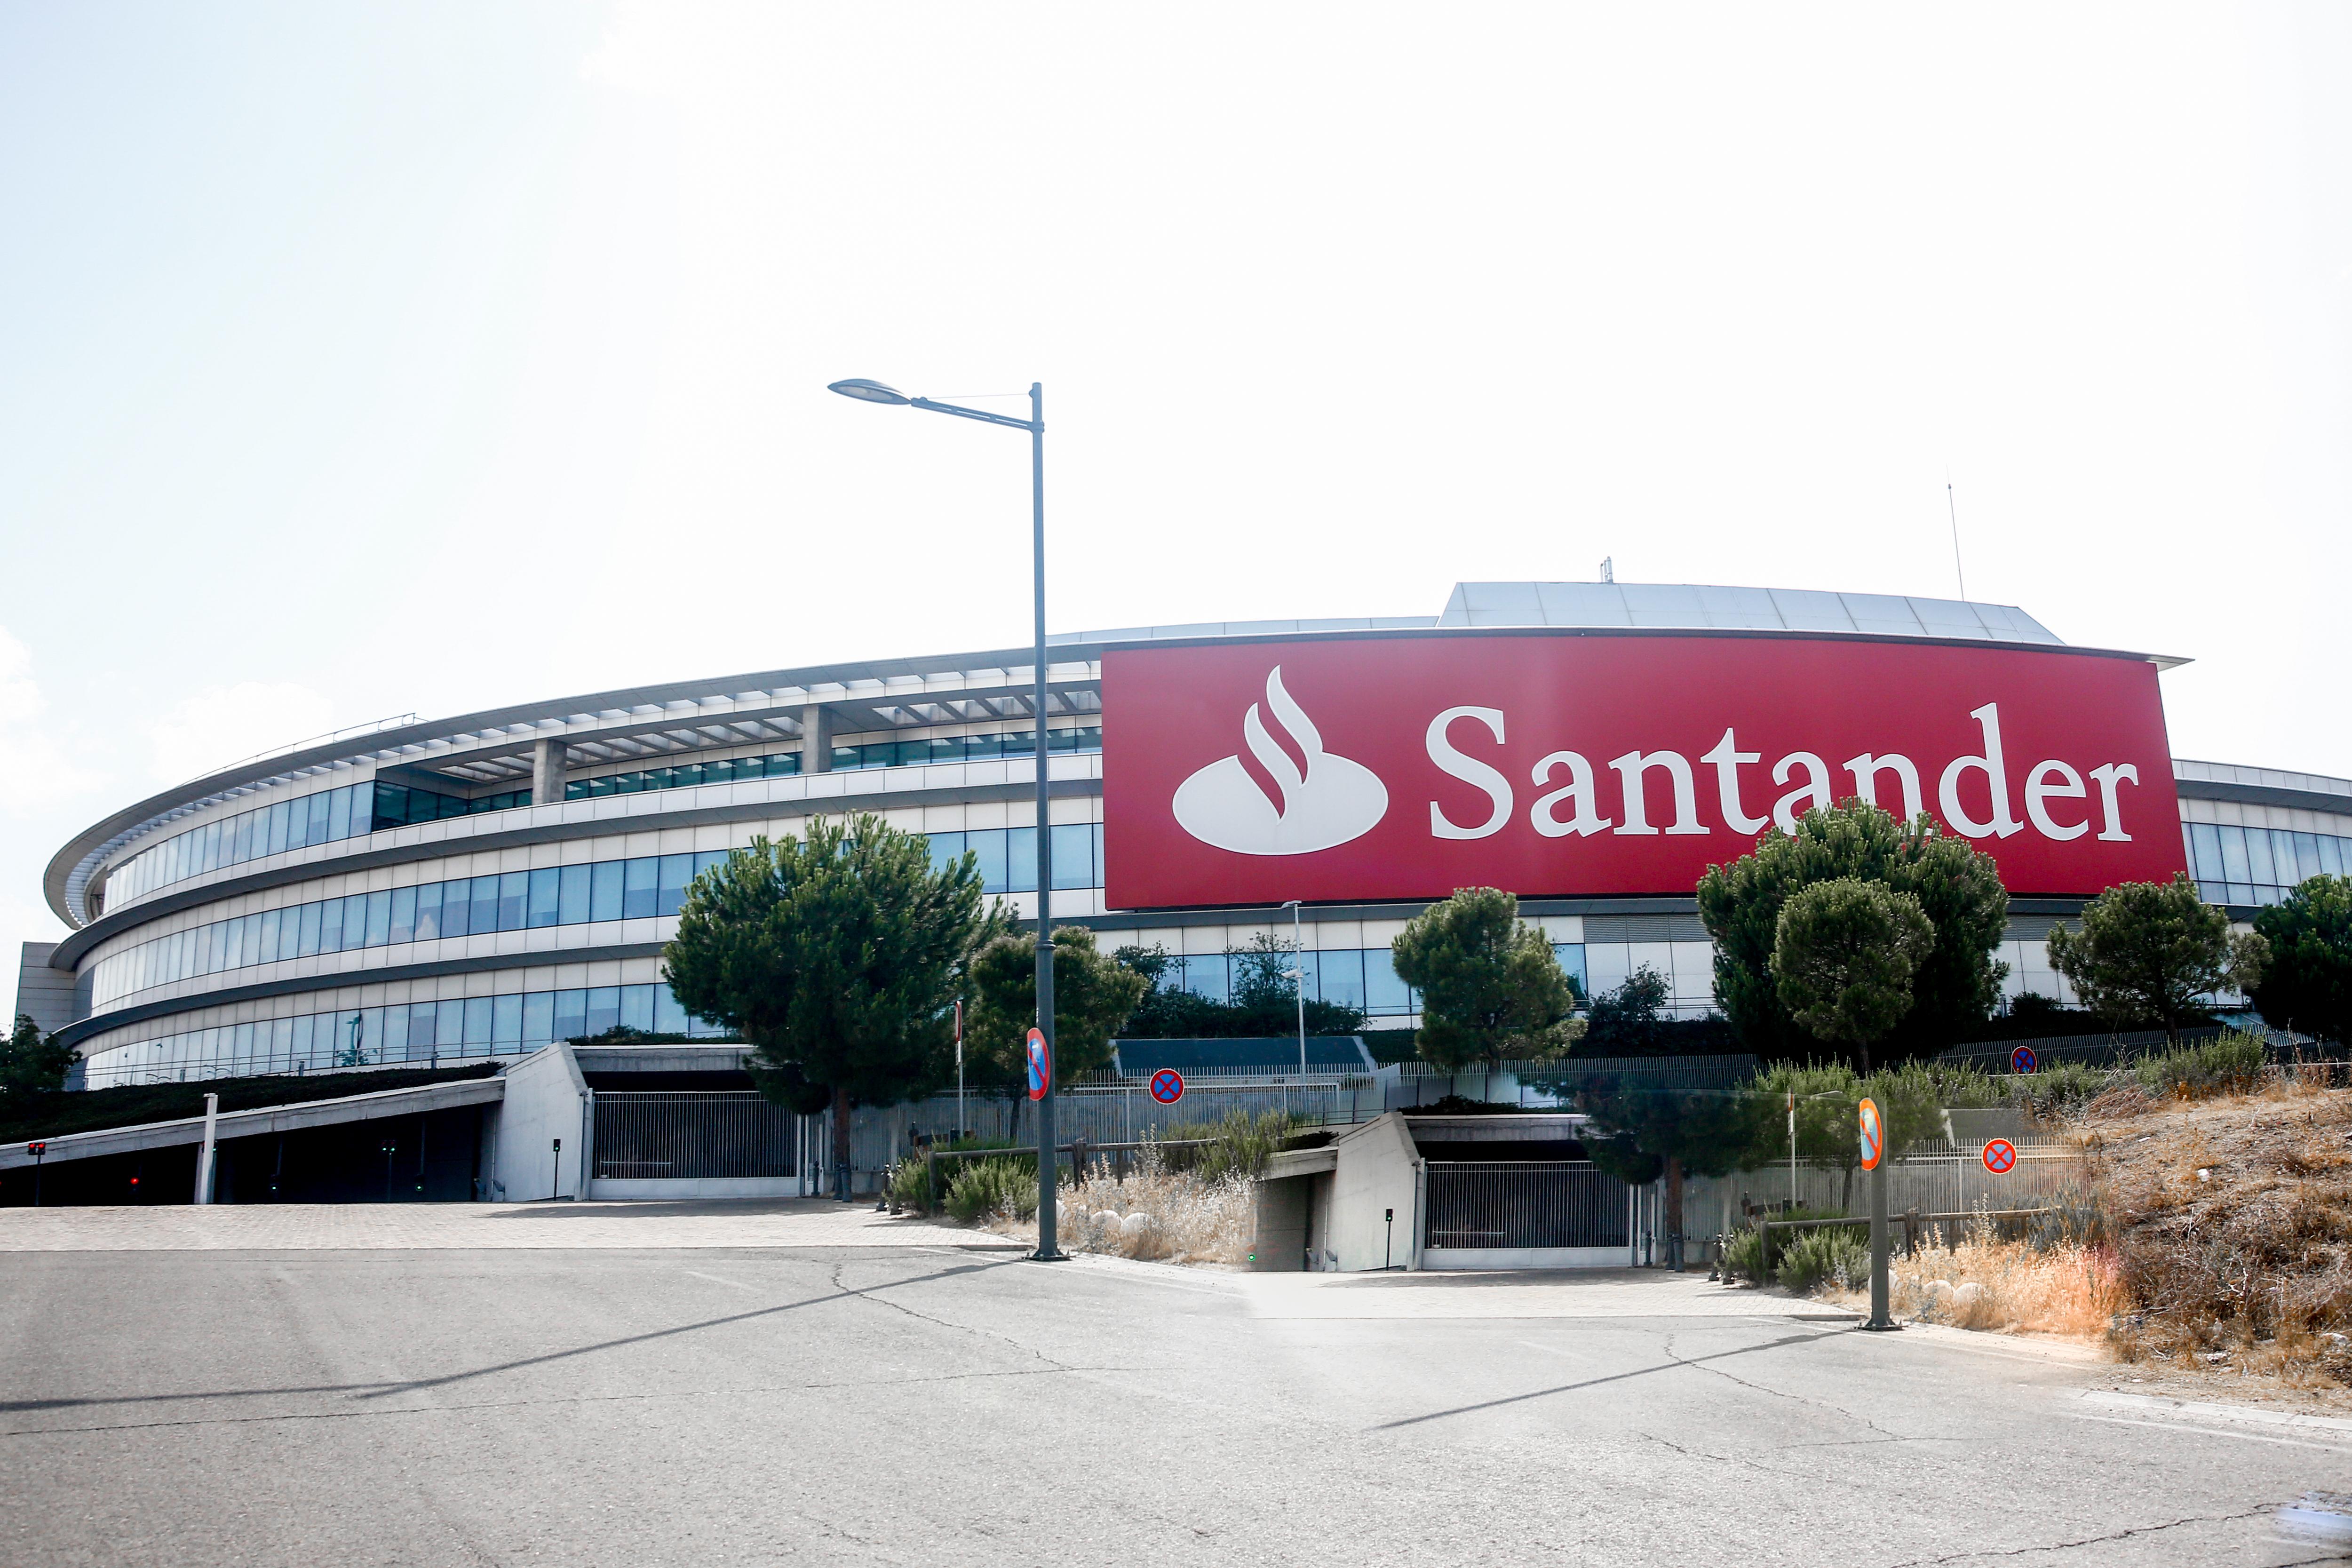 Santander impulsa Tresmares Capital, una plataforma independiente de financiación alternativa para pymes